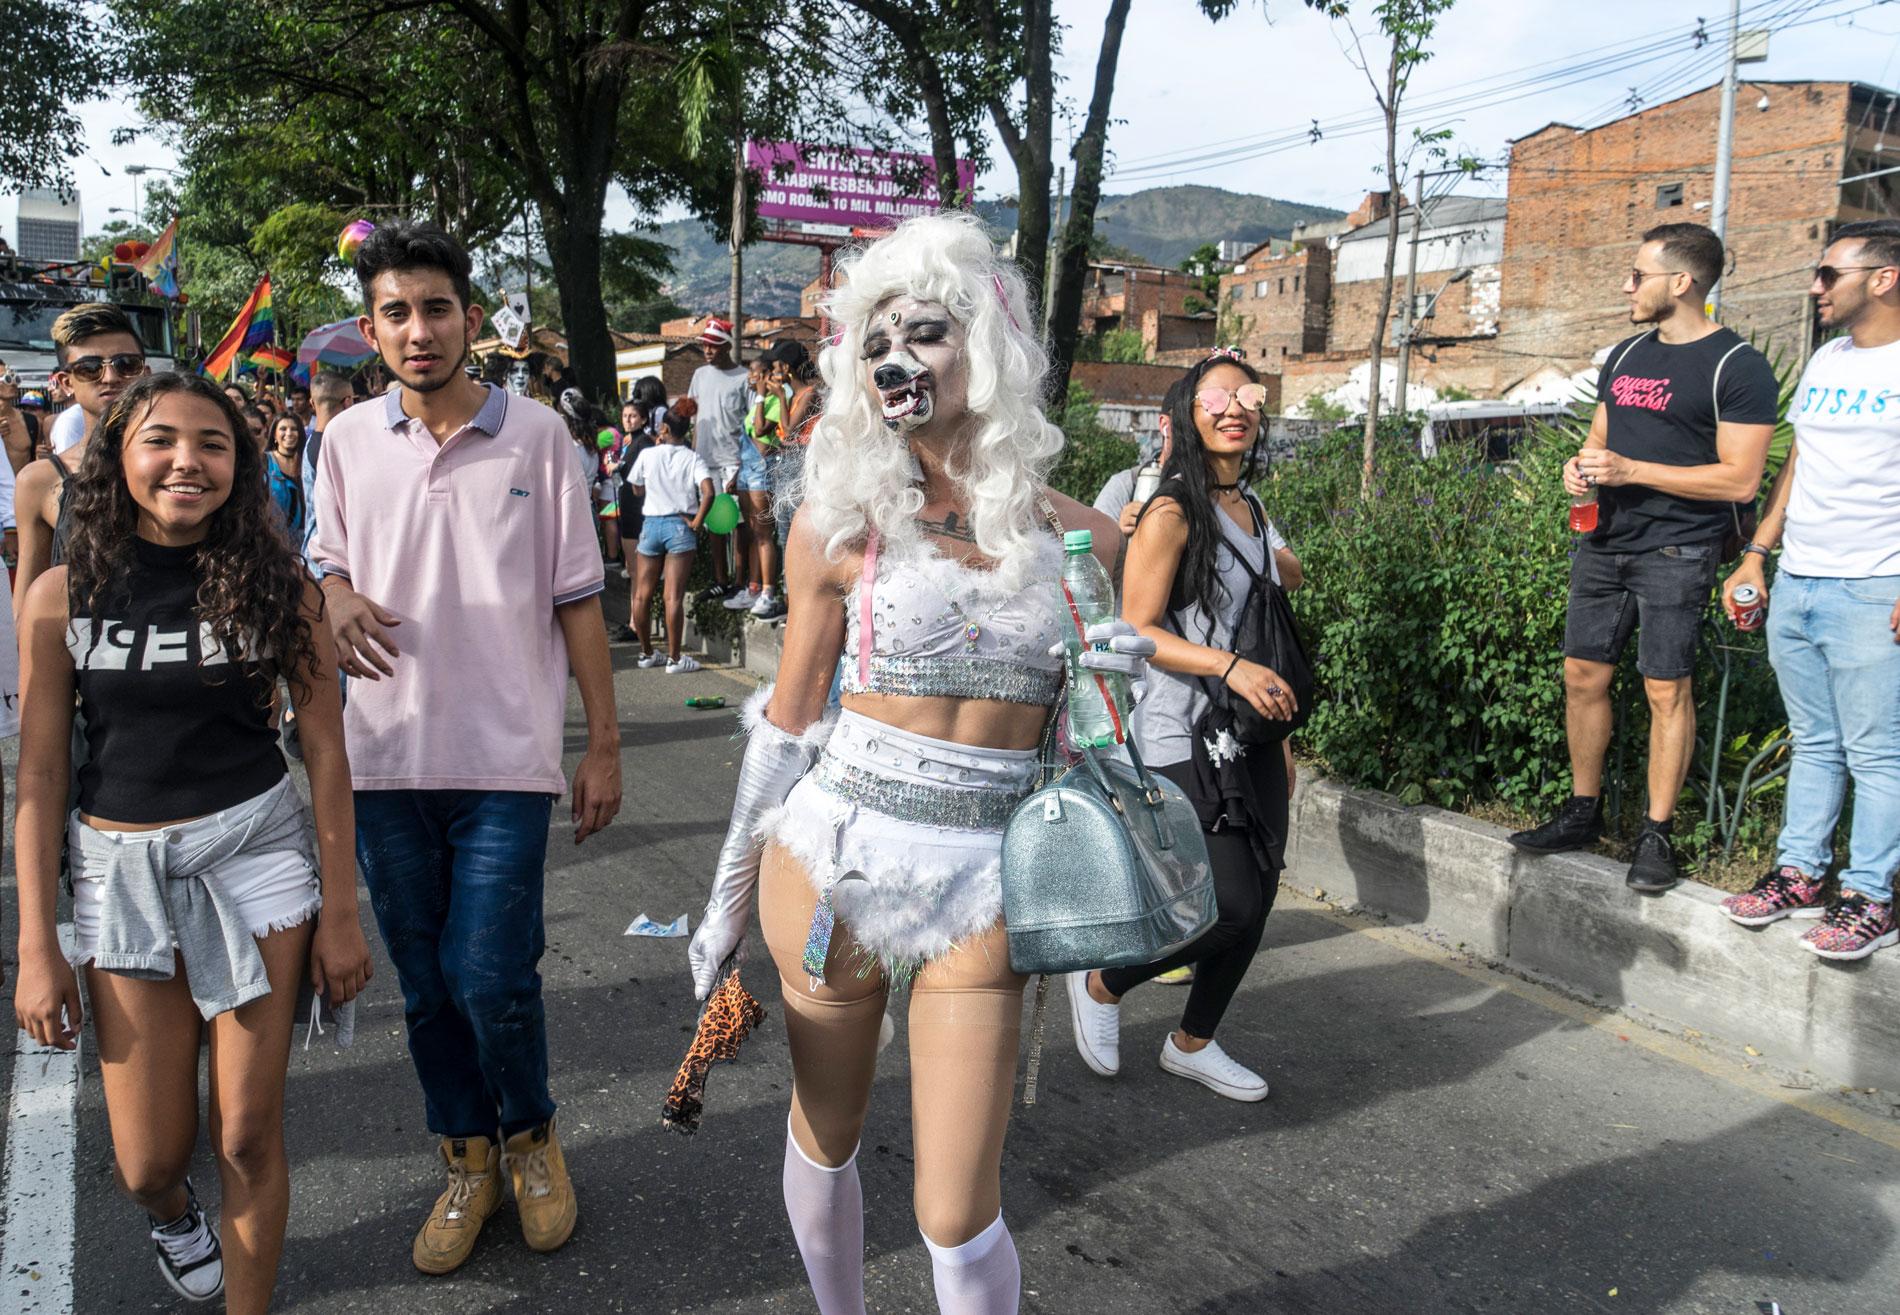 Marcha del Orgullo Gay. Medellín, 2019 - fotografía Juan Fernando Ospina